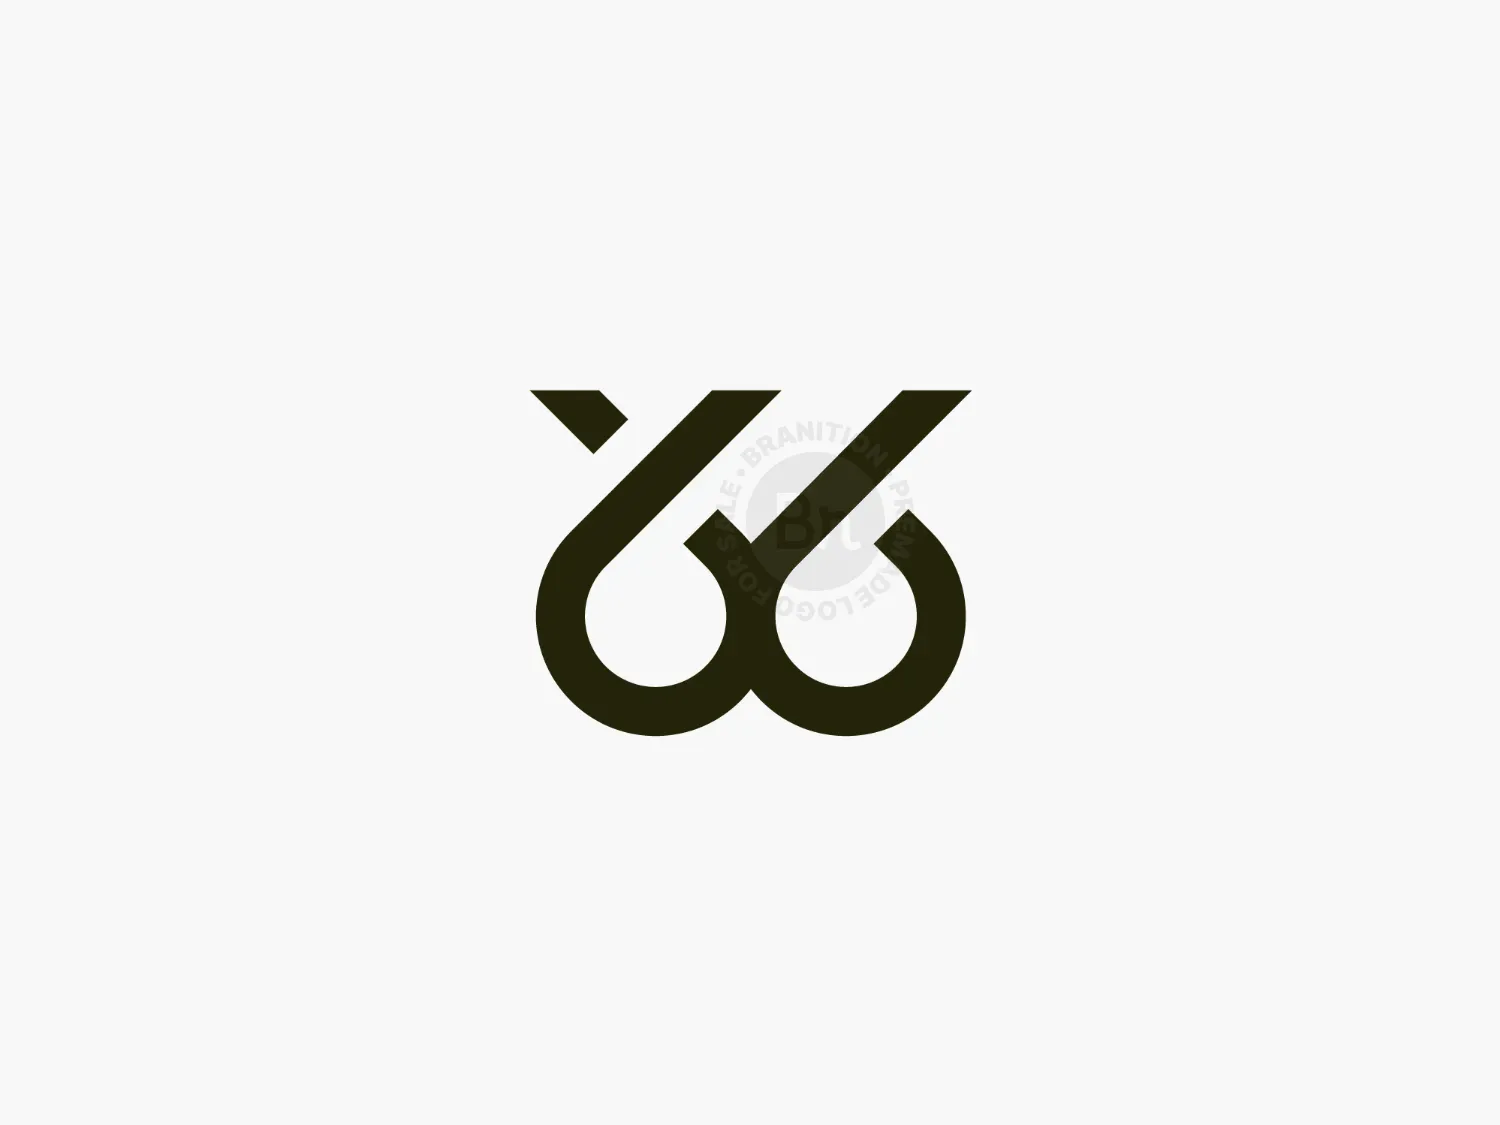 WY Or 66 Logo